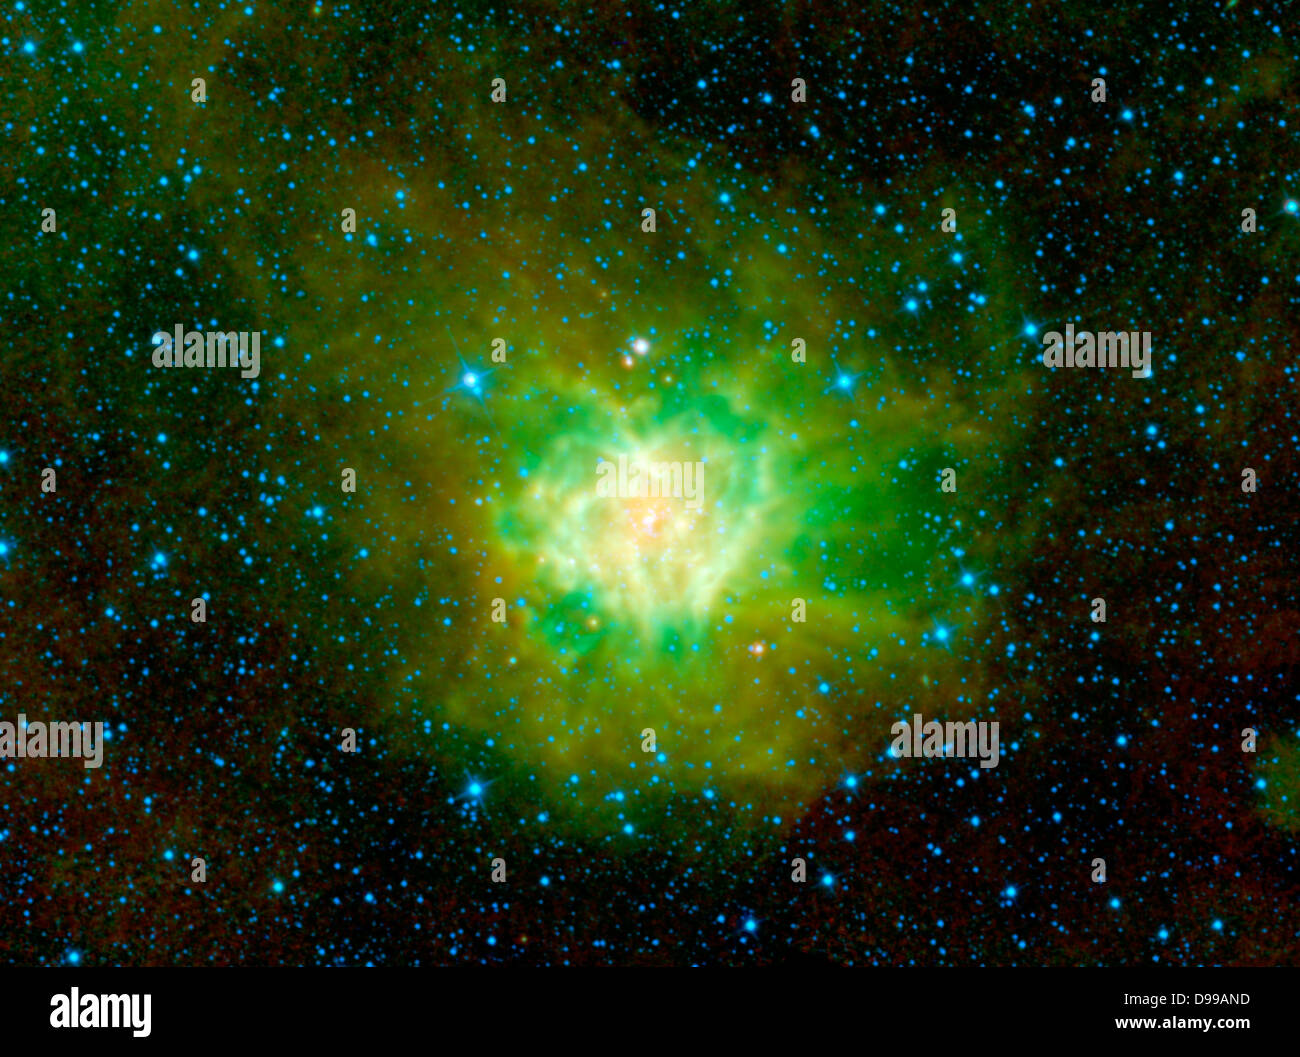 La nebulosa Cocoon está representado en esta imagen de la NASA del sabio. Esta nube de polvo y gas, catalogada como IC 5146 y situada en la constelación de Cygnus, está envuelto en una oscura nube de polvo llamada Barnard 168. Dentro de este capullo de polvo y gas, se están formando nuevas estrellas y comienza a surgir en el medio silvestre. Foto de stock